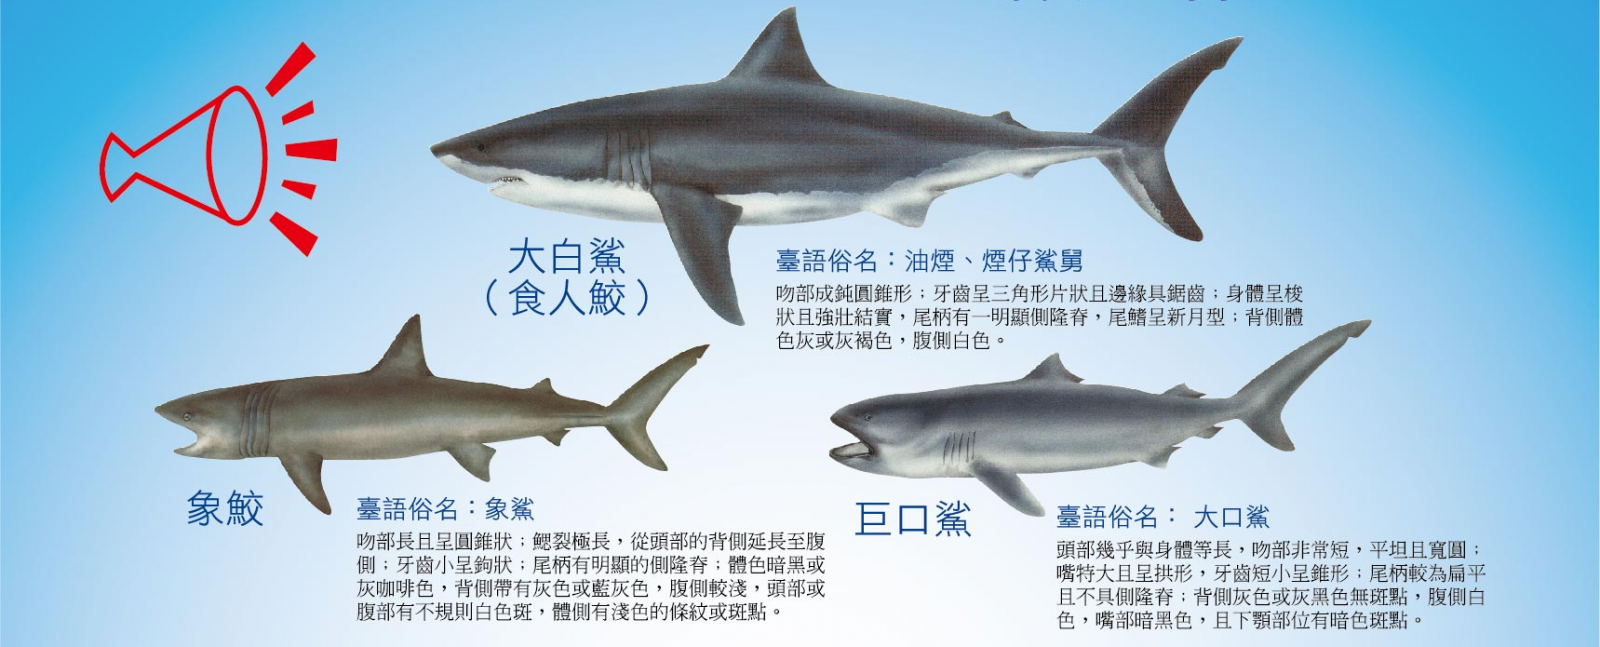 大白鯊、象鮫及巨口鯊漁獲管制措施